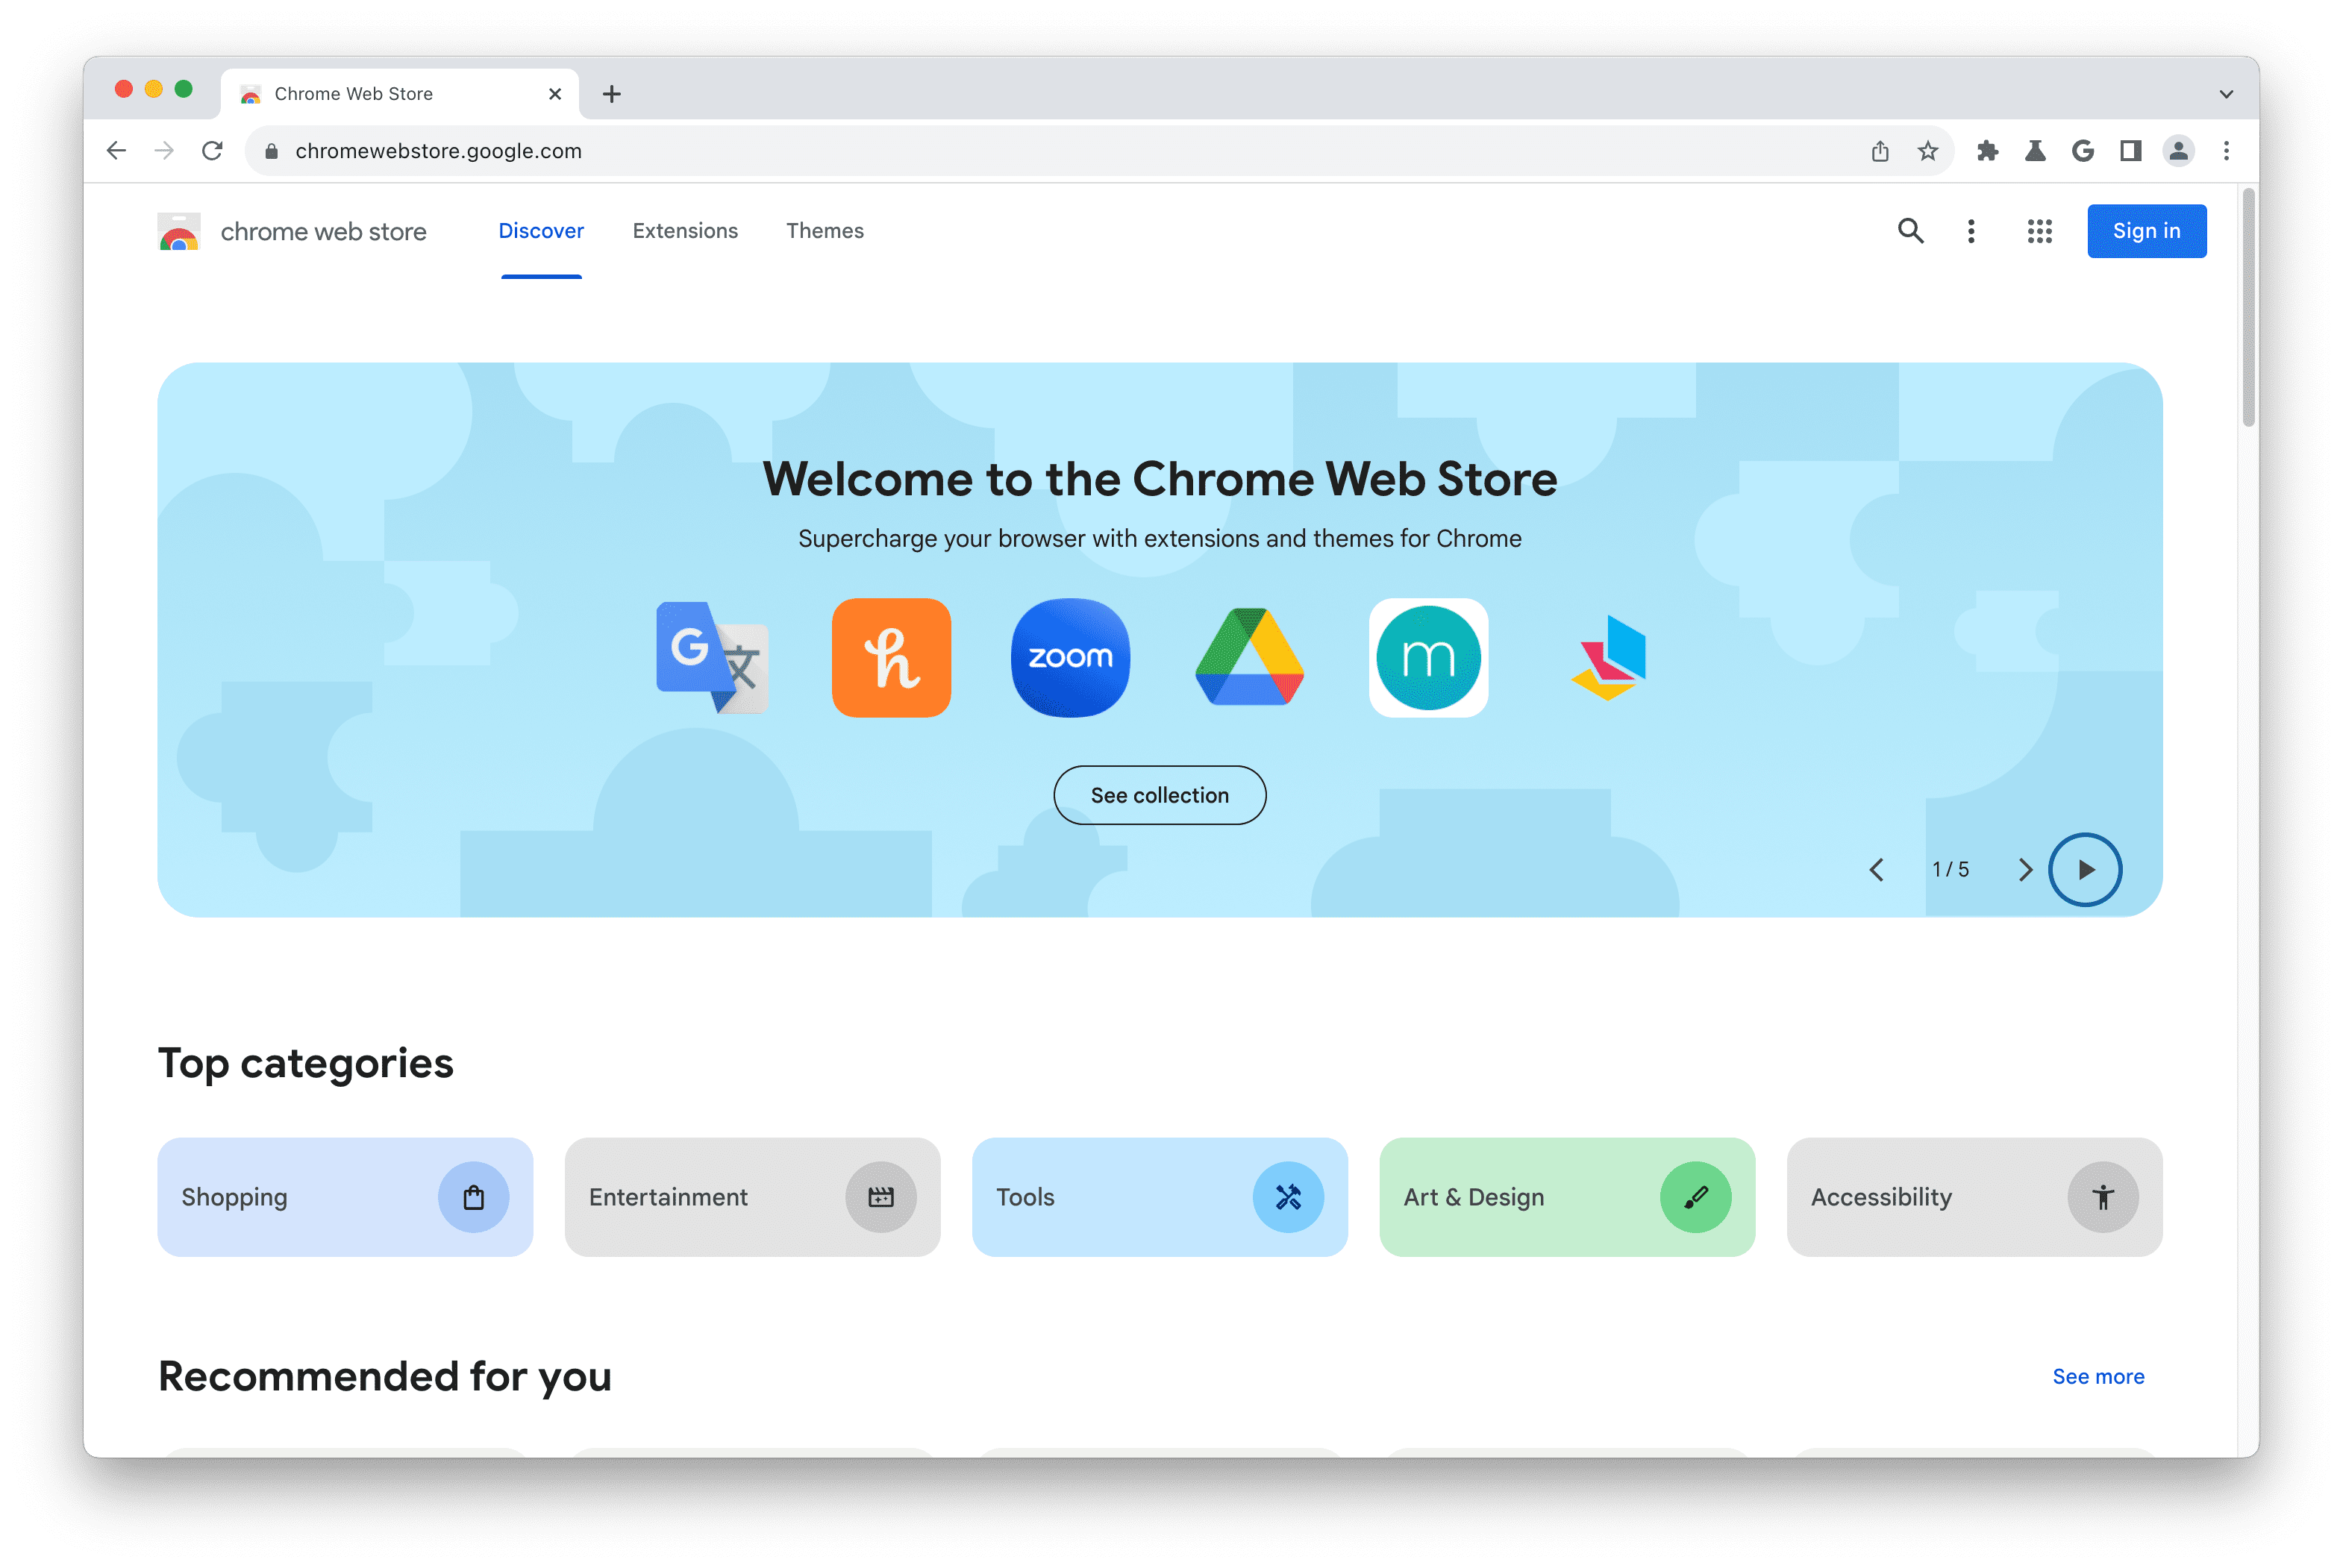 Schermafbeelding van de startpagina van de Chrome Web Store.